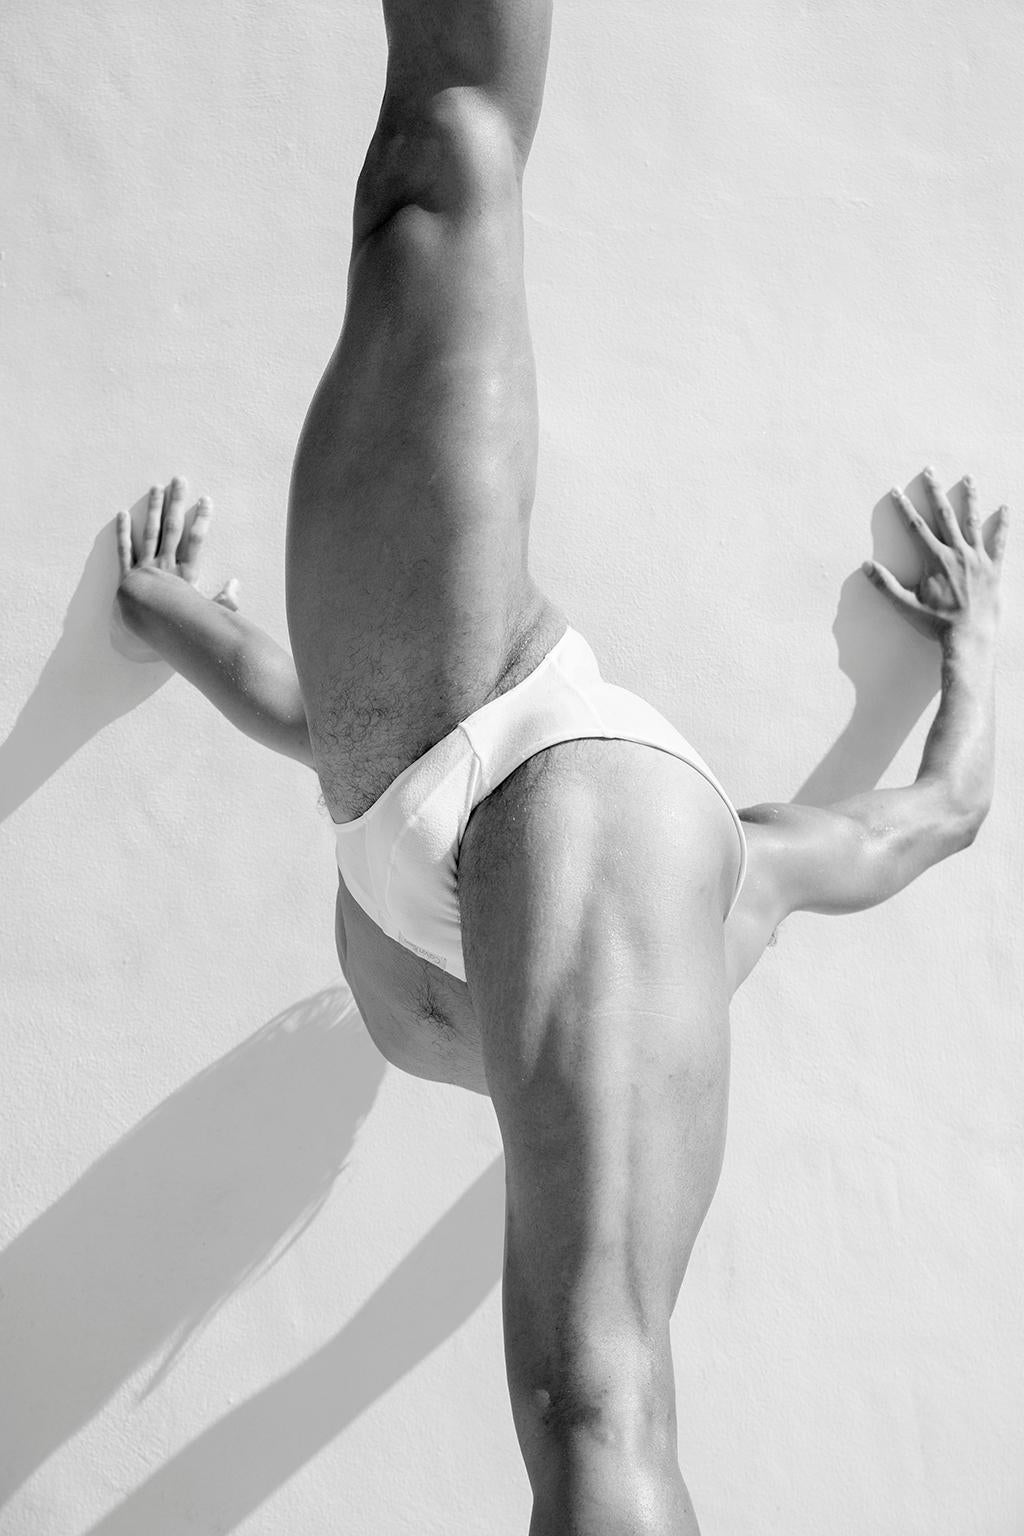 Ricky Cohete Nude Photograph – Männer Beine, 1. Motion Series. Männlicher Akt Schwarz-Weiß-Fotografie